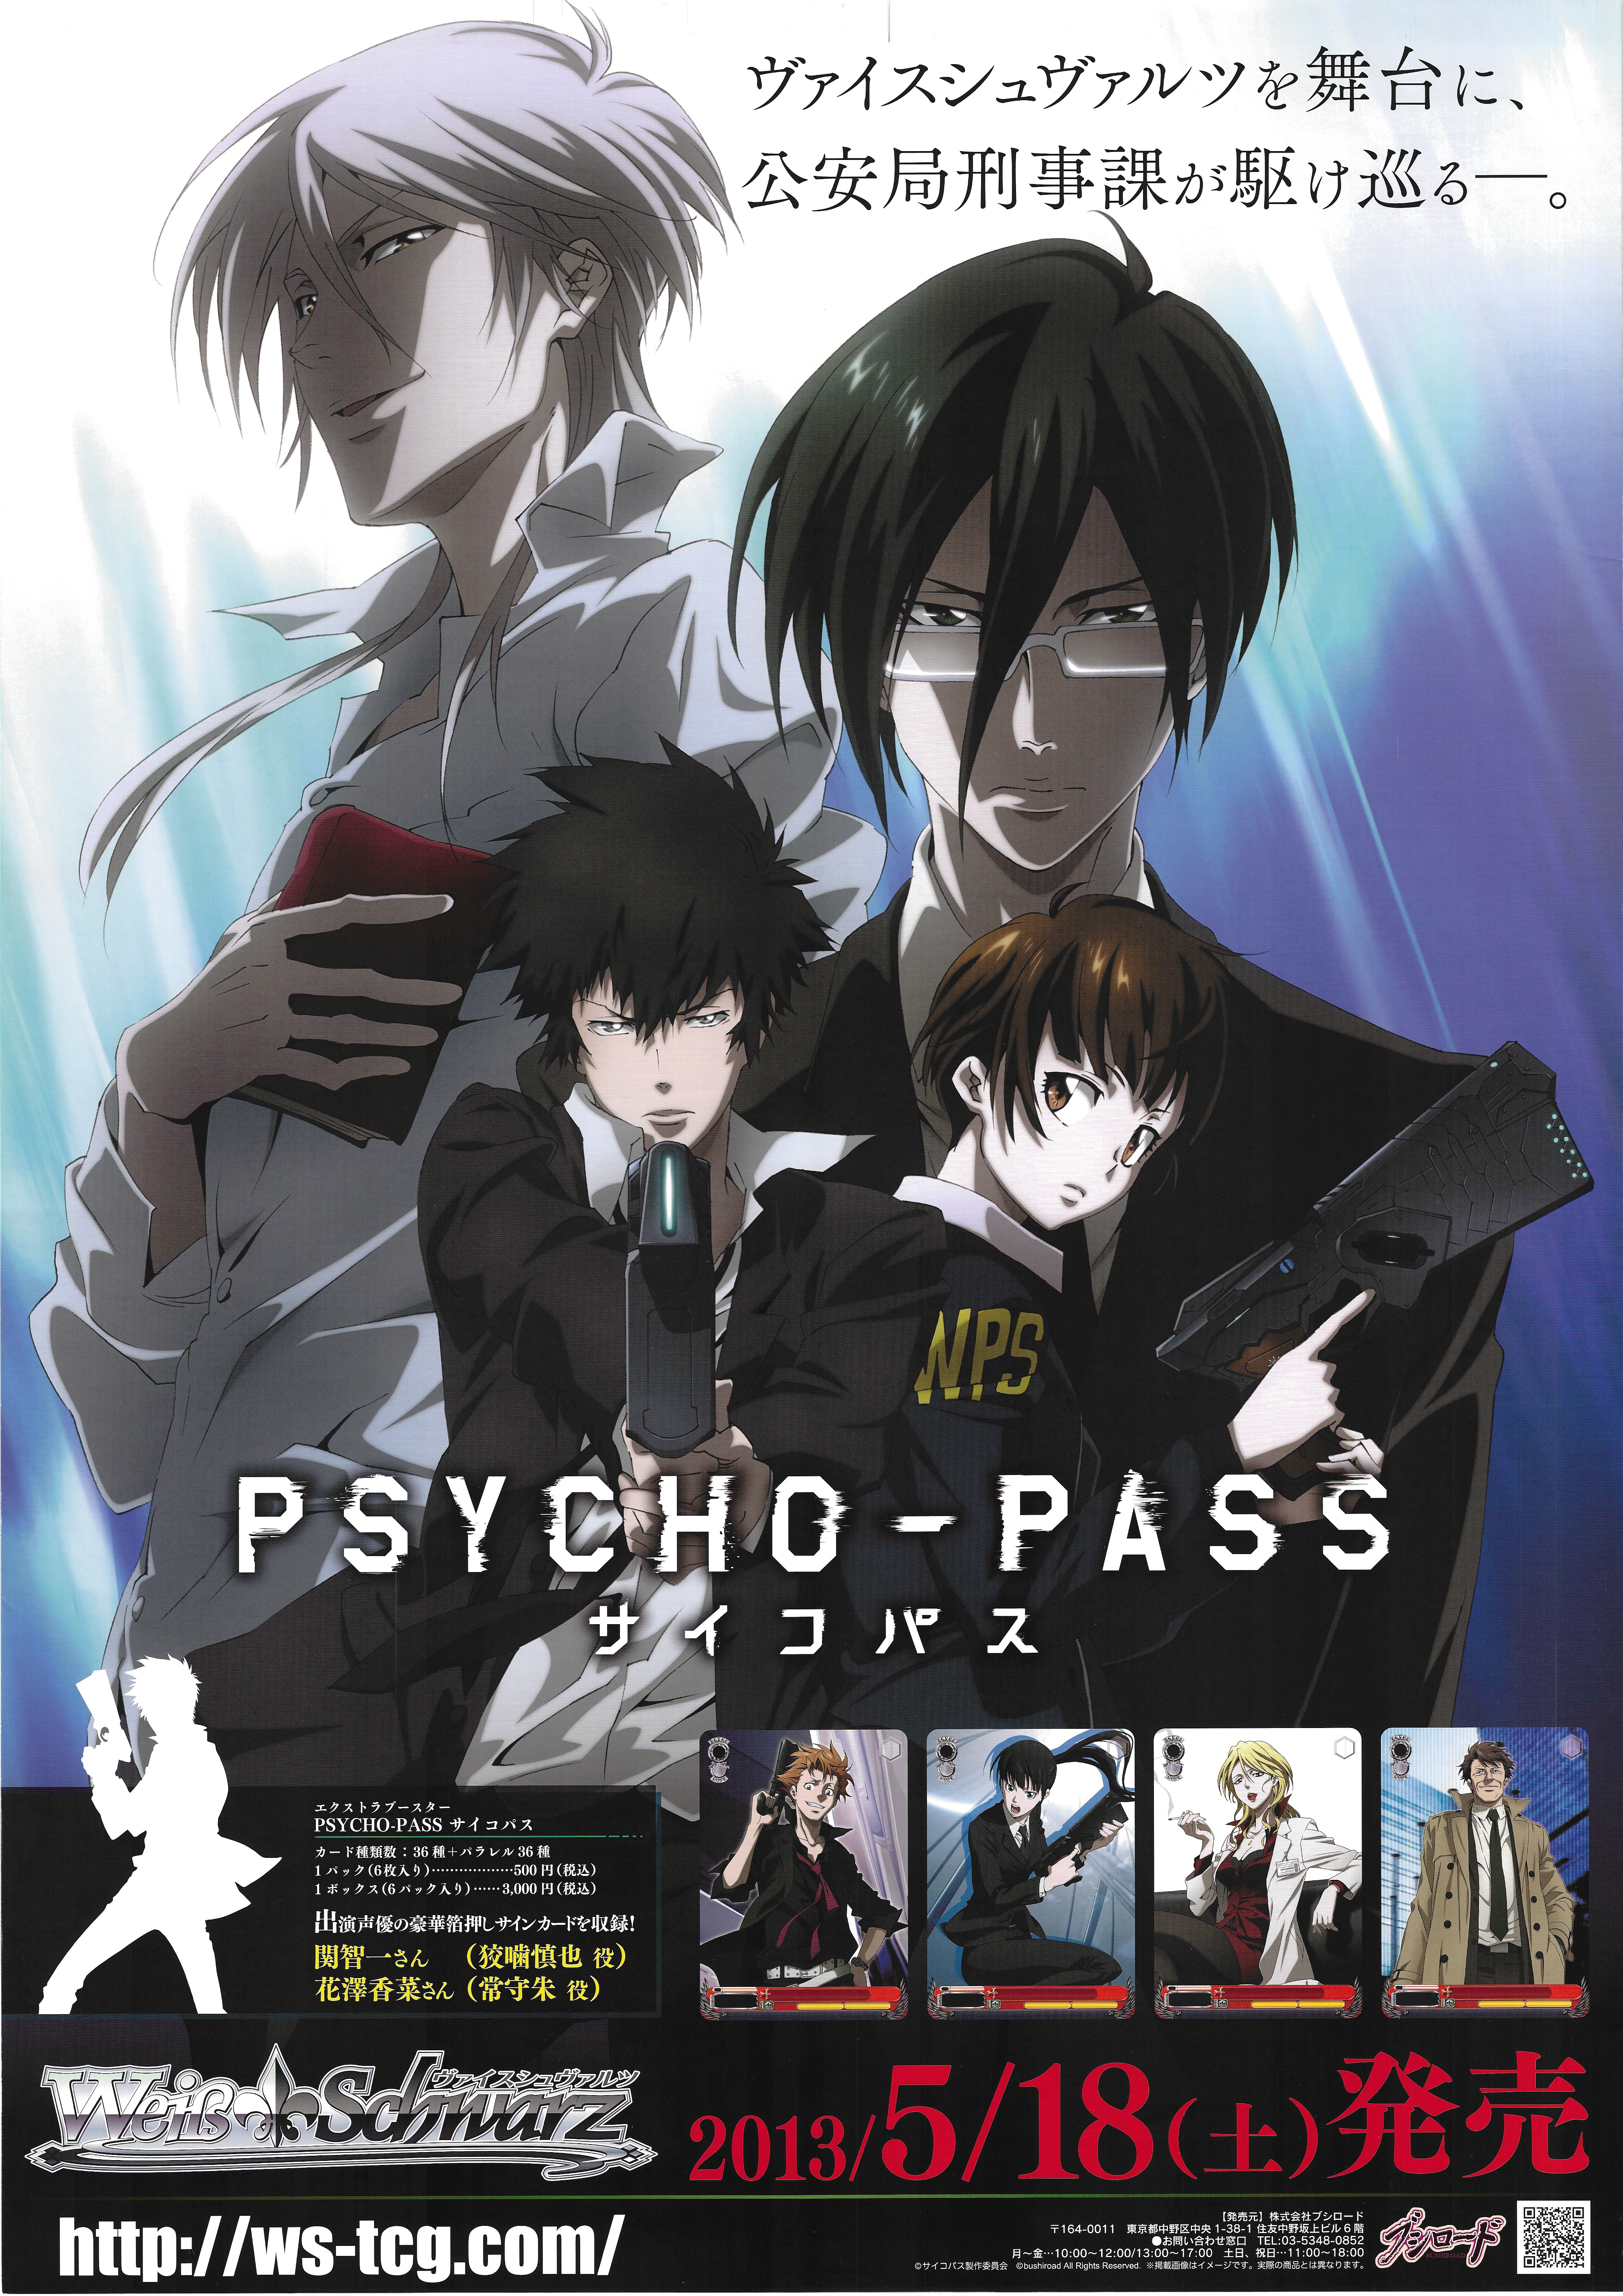 Announcements For Psycho Pass Psychopaths Weiss Schwarz Extra Booster B2 Poster Mandarake Online Shop